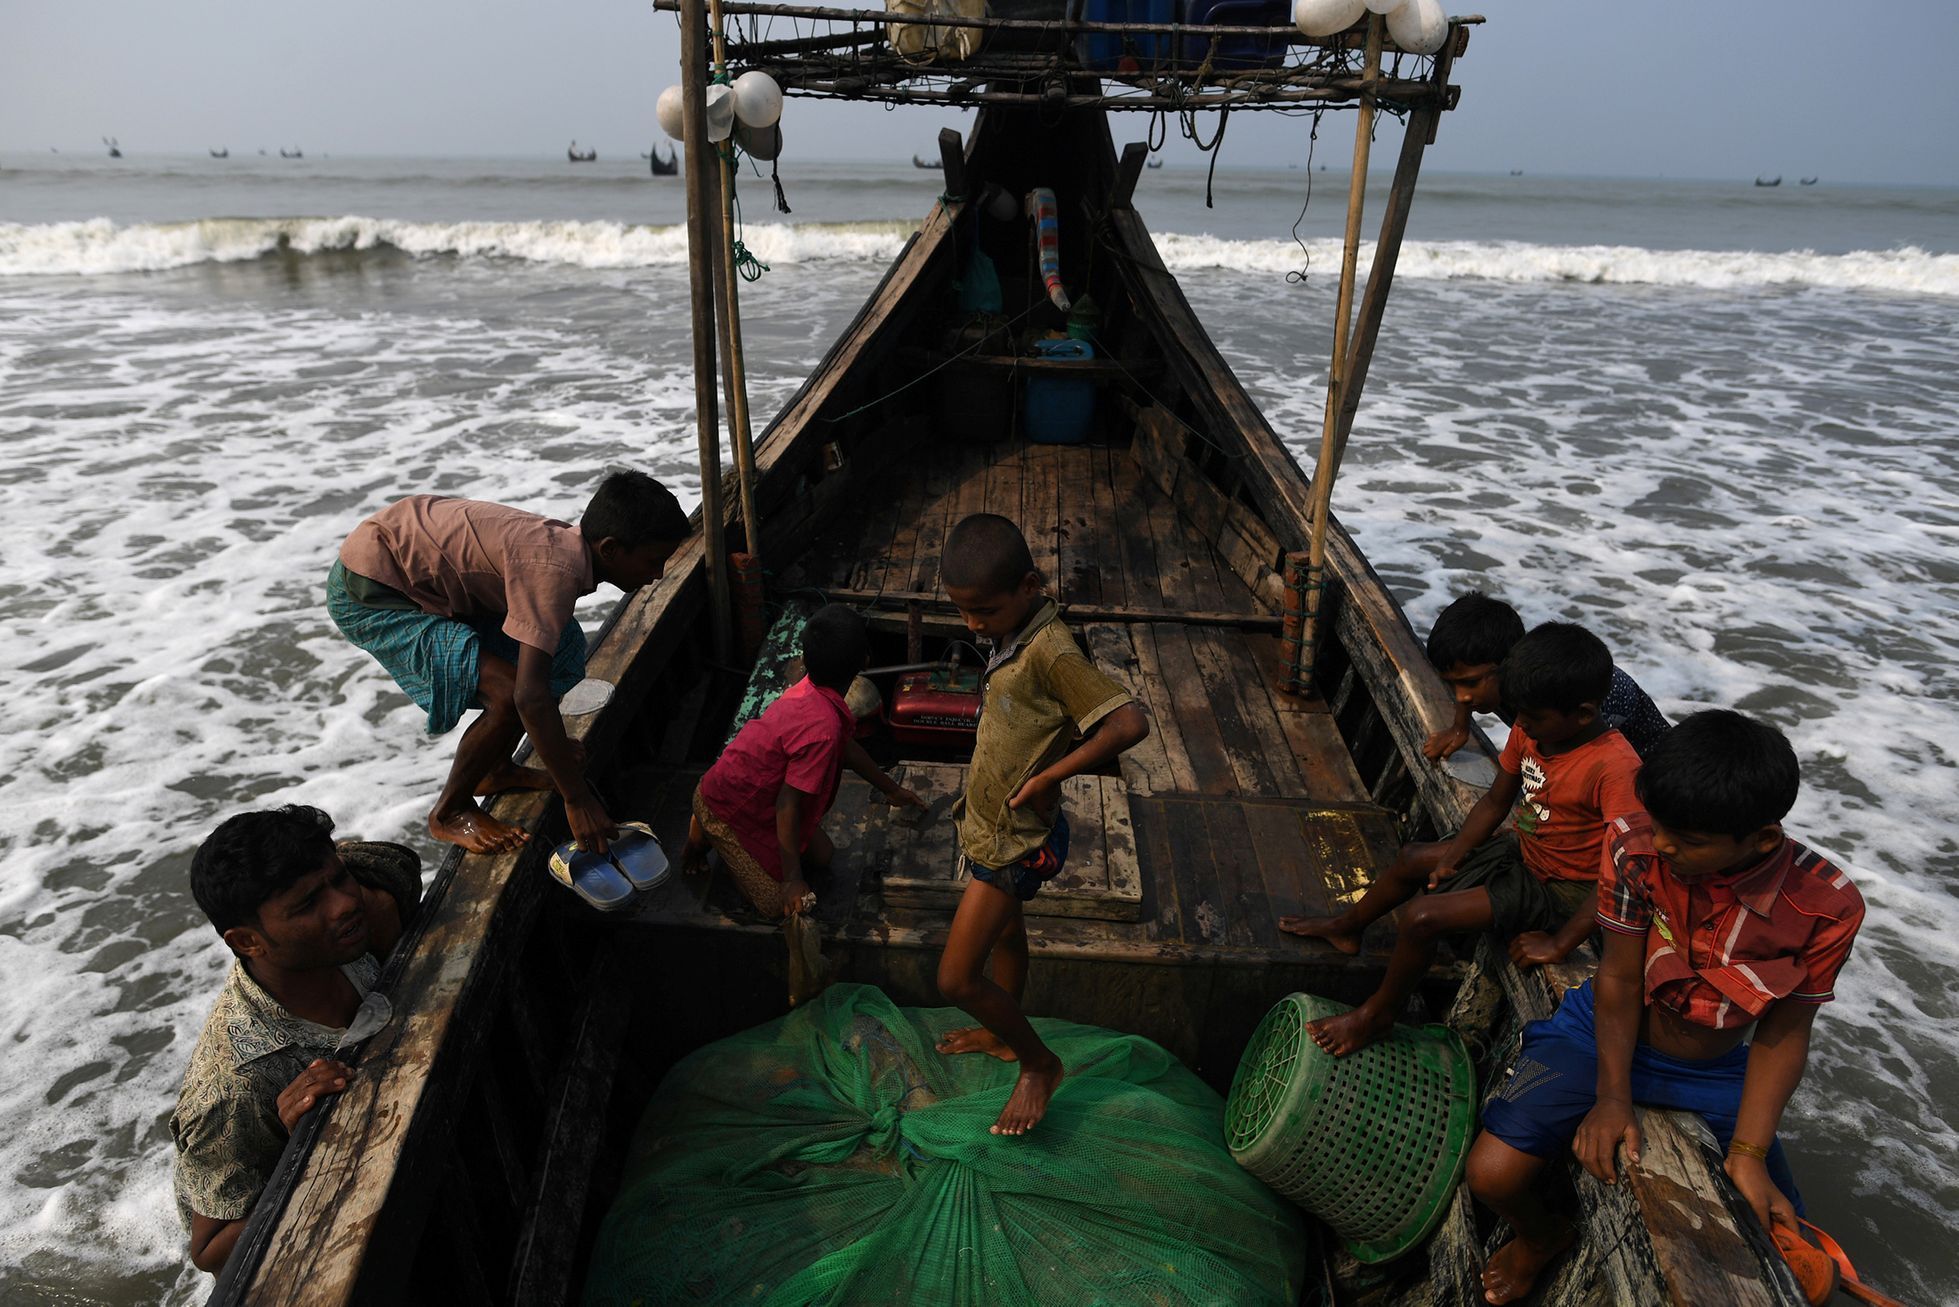 Fotogalerie / Rohingové v Bangladéši / Reuters / 12